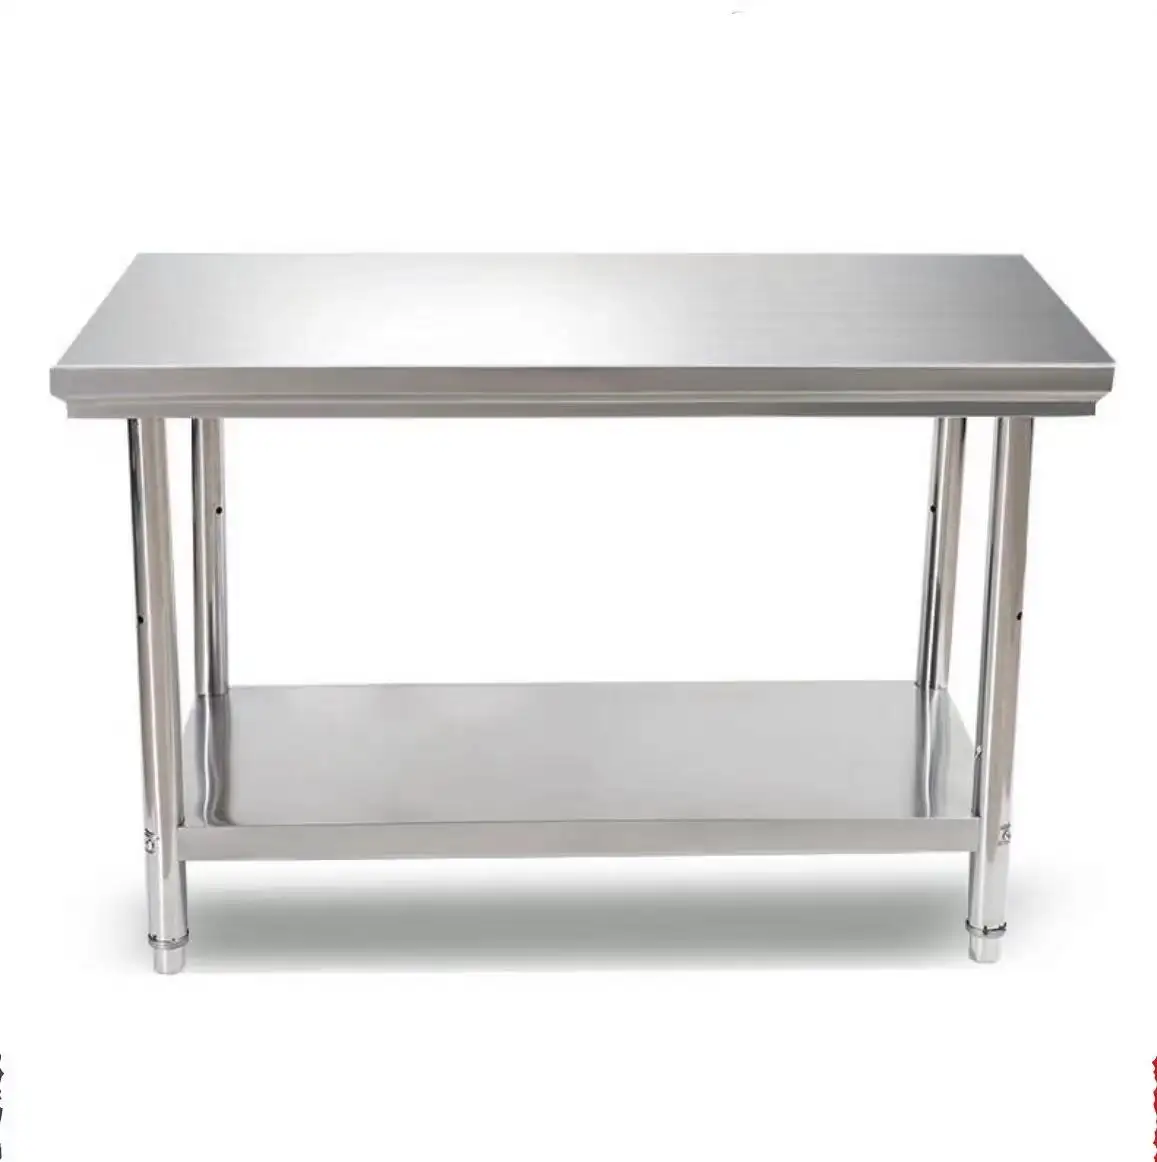 طاولات عمل للمطاعم أدوات مطبخ تجارية/201 304 طاولة من الفولاذ المقاوم للصدأ طاولة عمل من الفولاذ المقاوم للصدأ